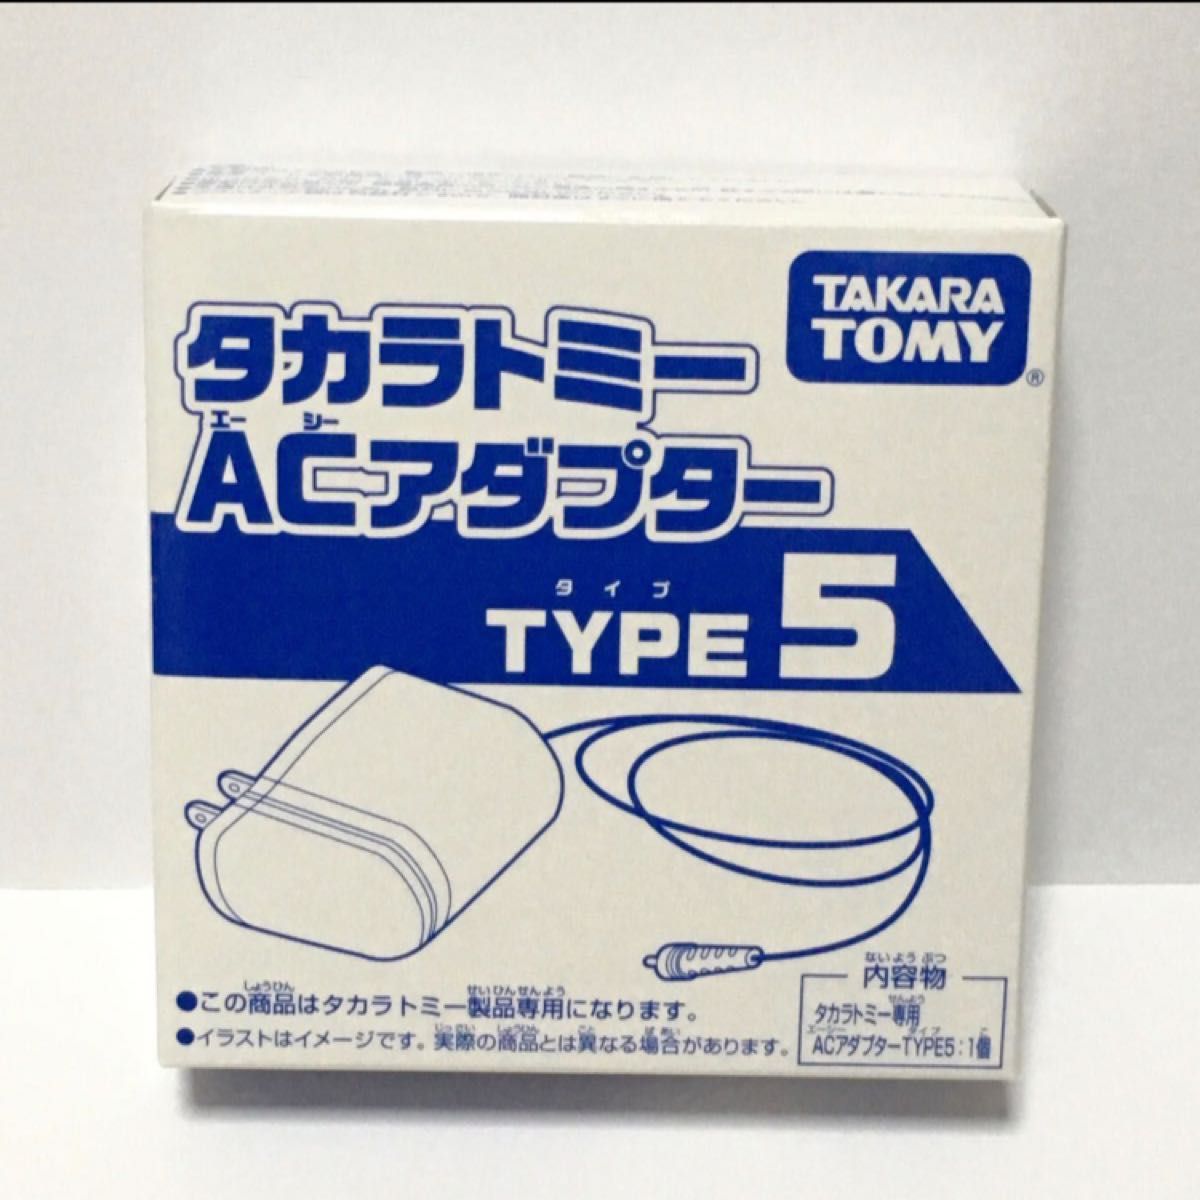 タカラトミー玩具専用 ACアダプター TYPE5 新品